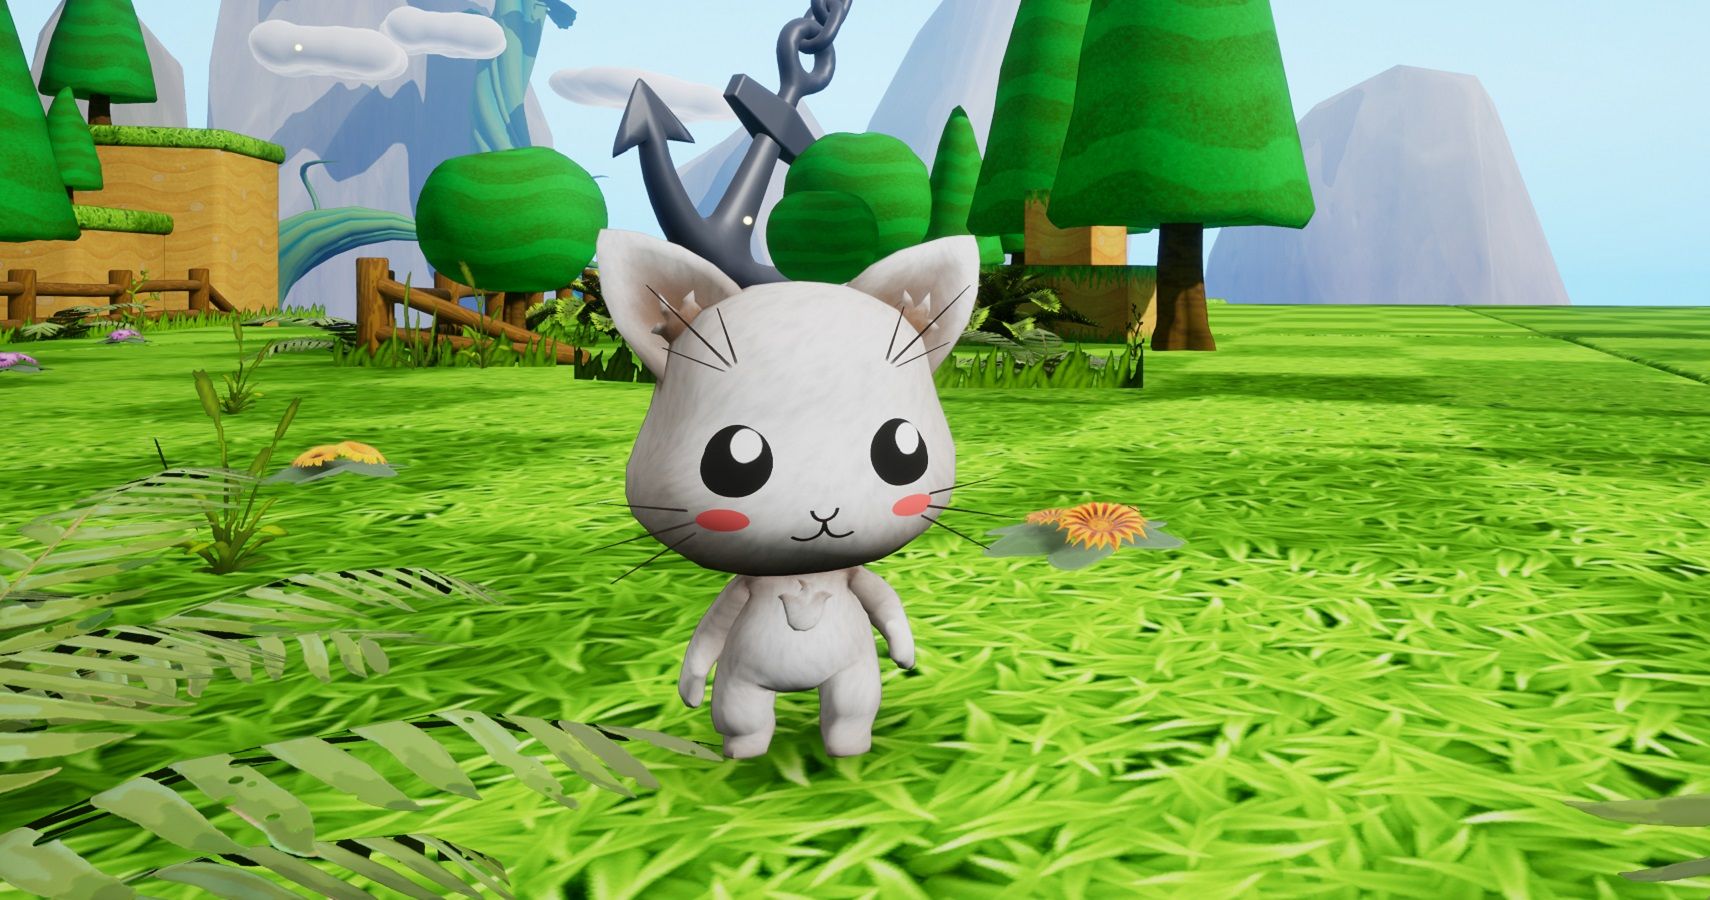 Neko Ghost Jump Cat Cute 3D Platformer